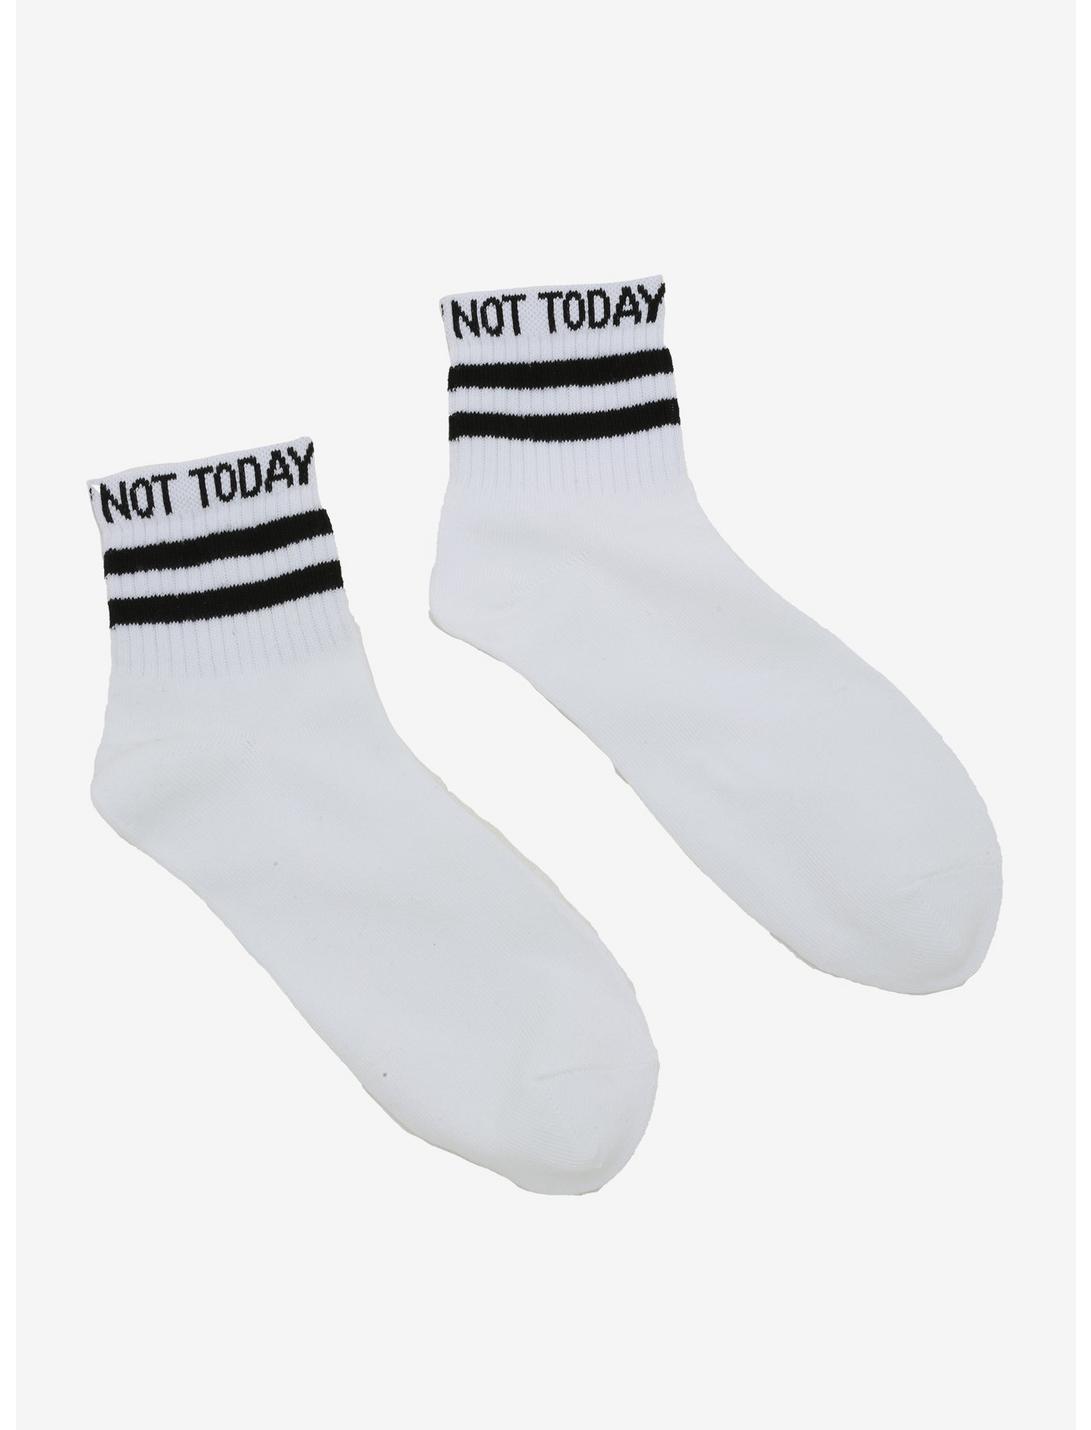 Not Today Black Stripe Ankle Socks, , hi-res